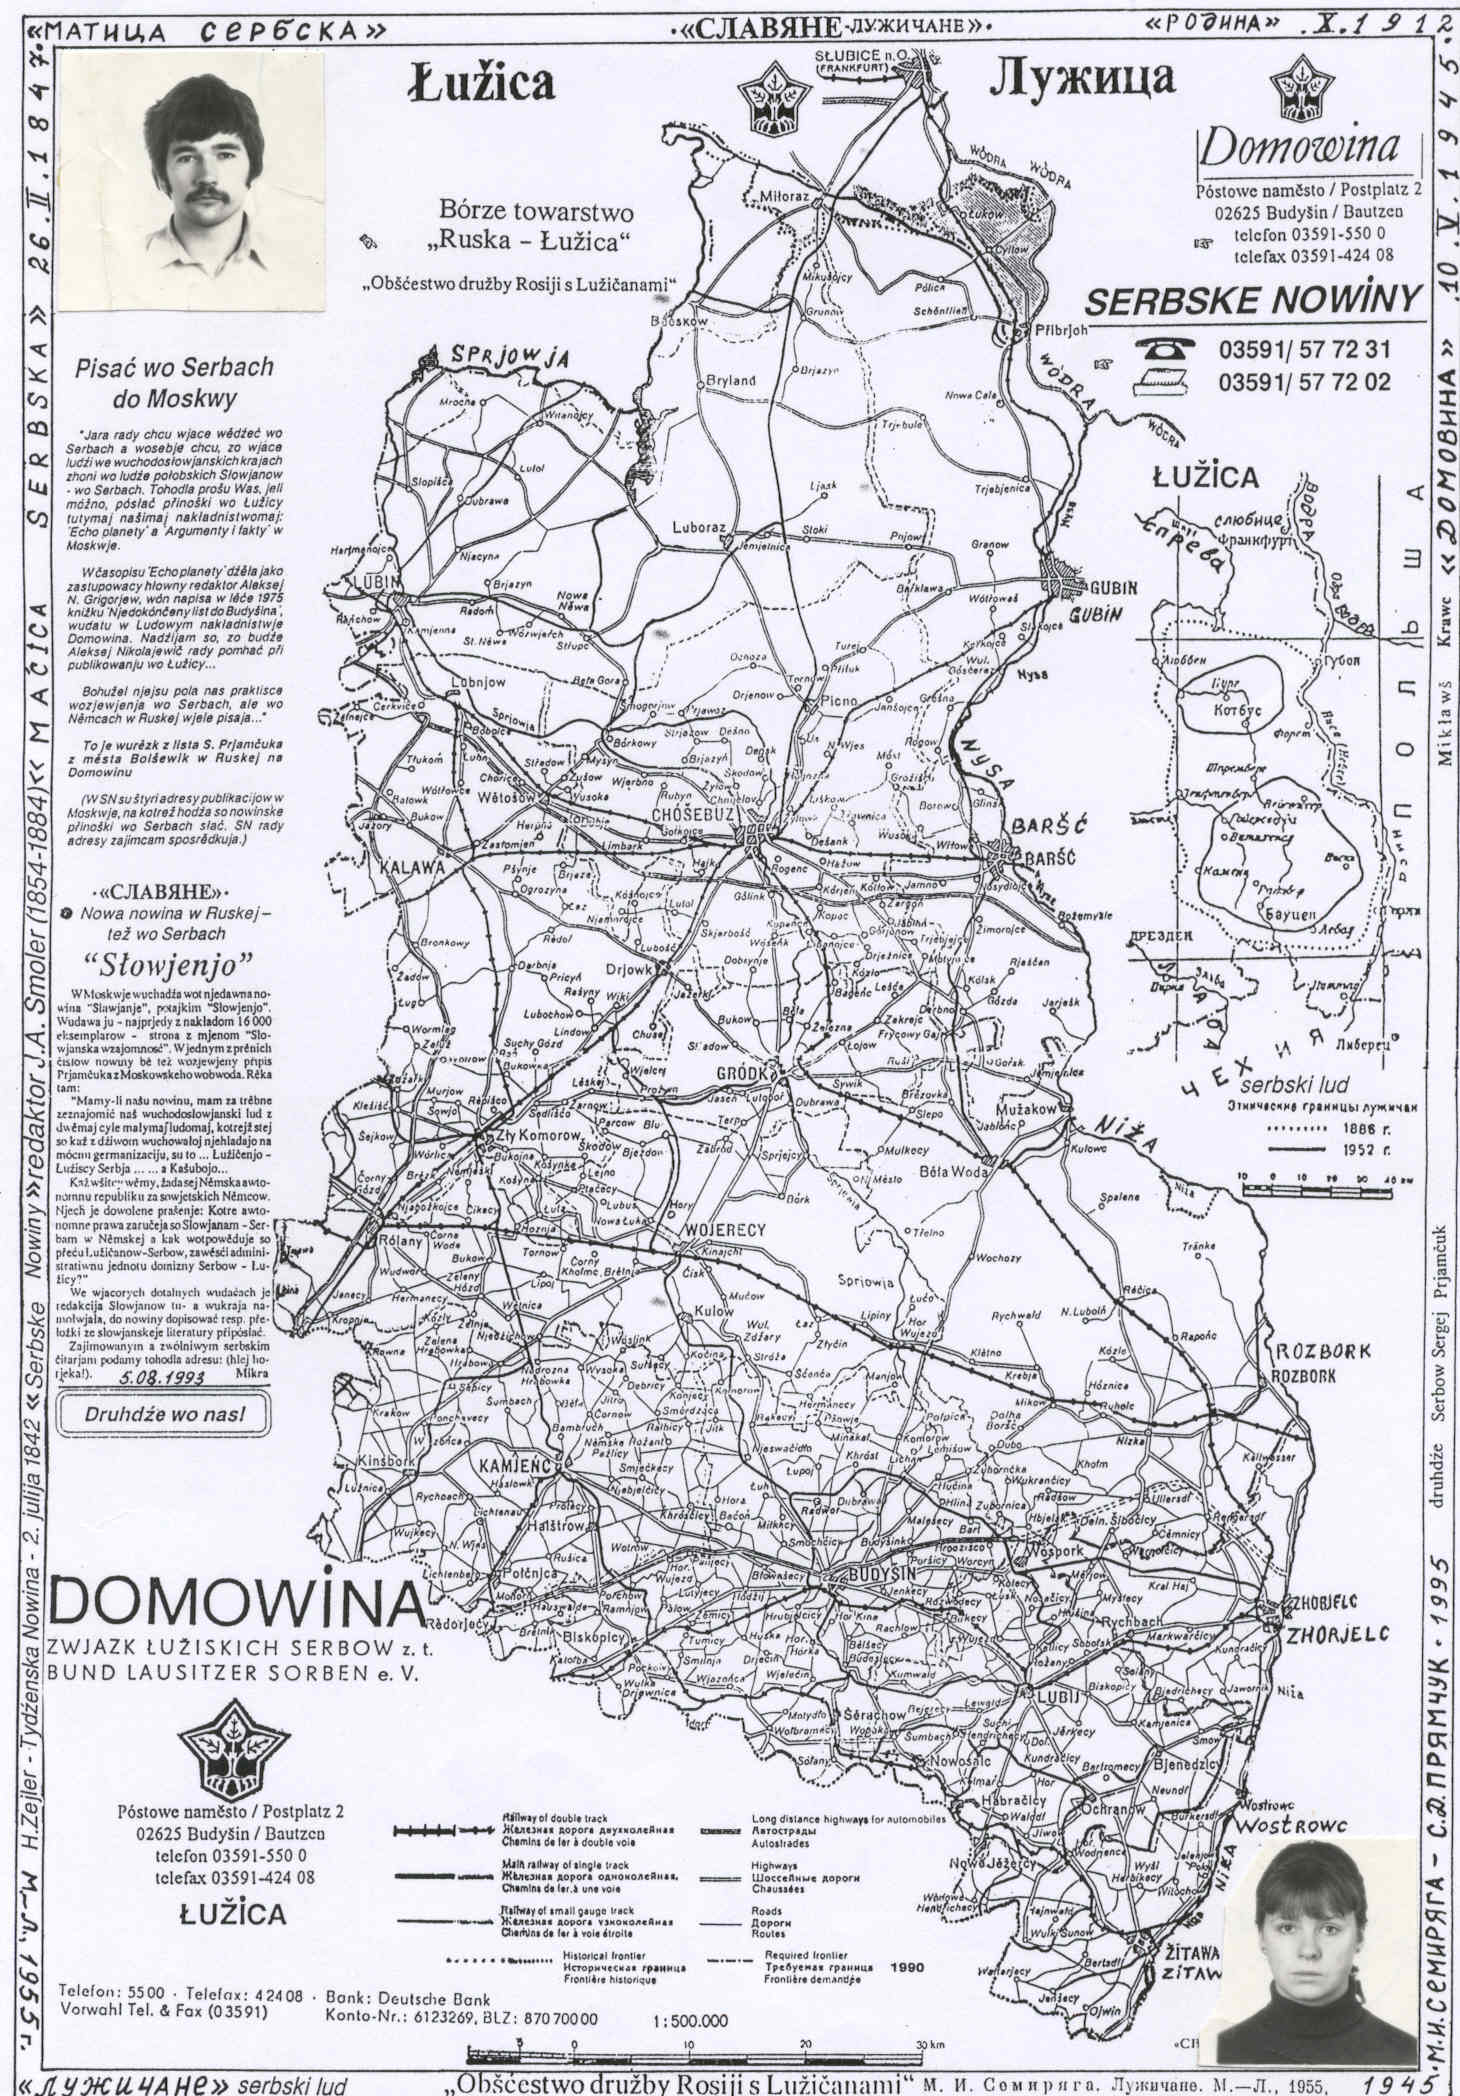 В 1945 г. лужичане просили автономию в этих границах для славянского края Лужица